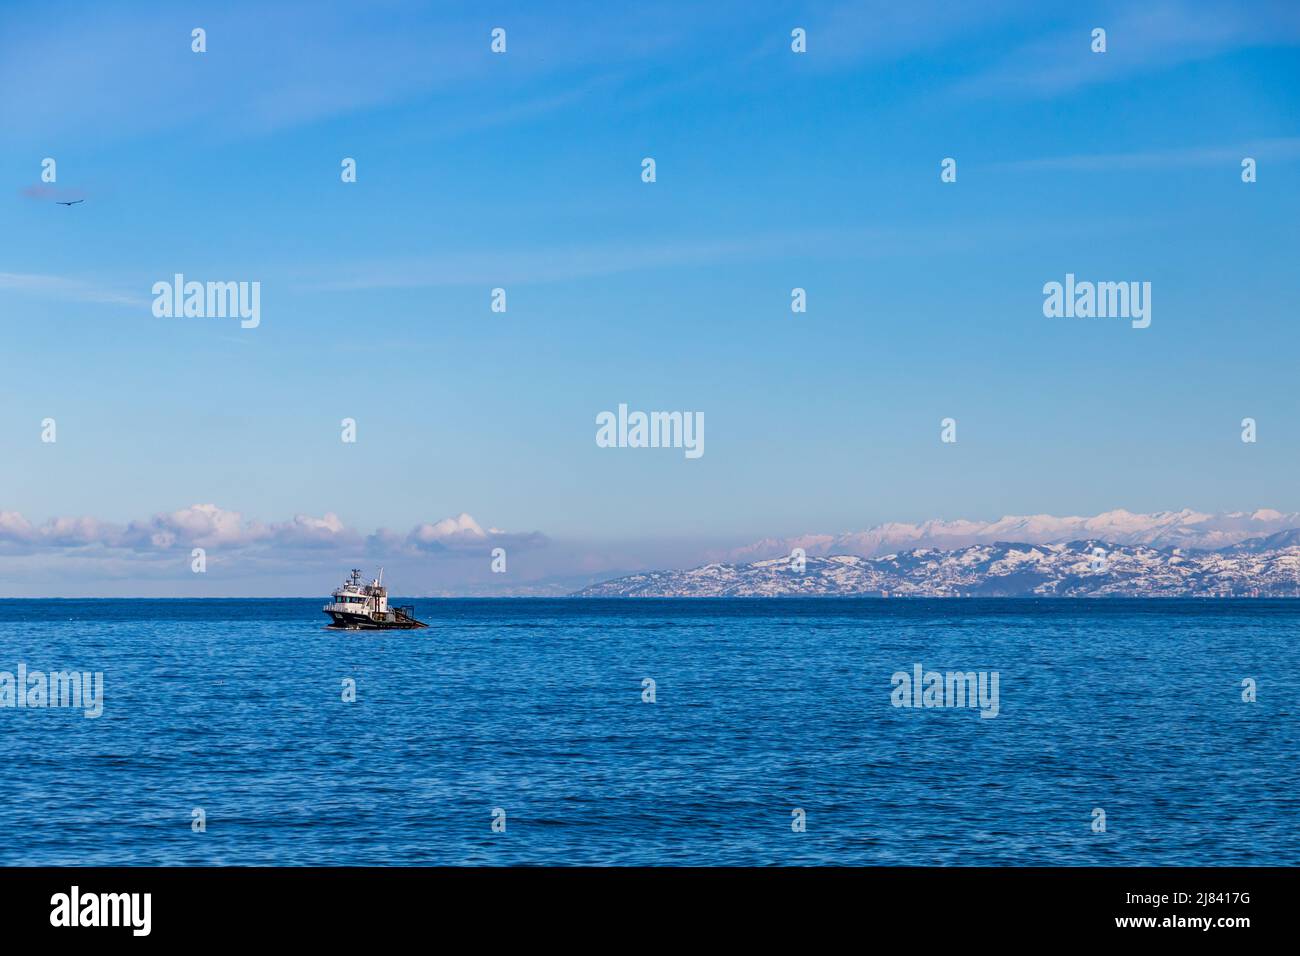 Arakli, Trabzon, bateau de pêche entre dans le port. Paysage de montagne enneigé est sur un fond Banque D'Images